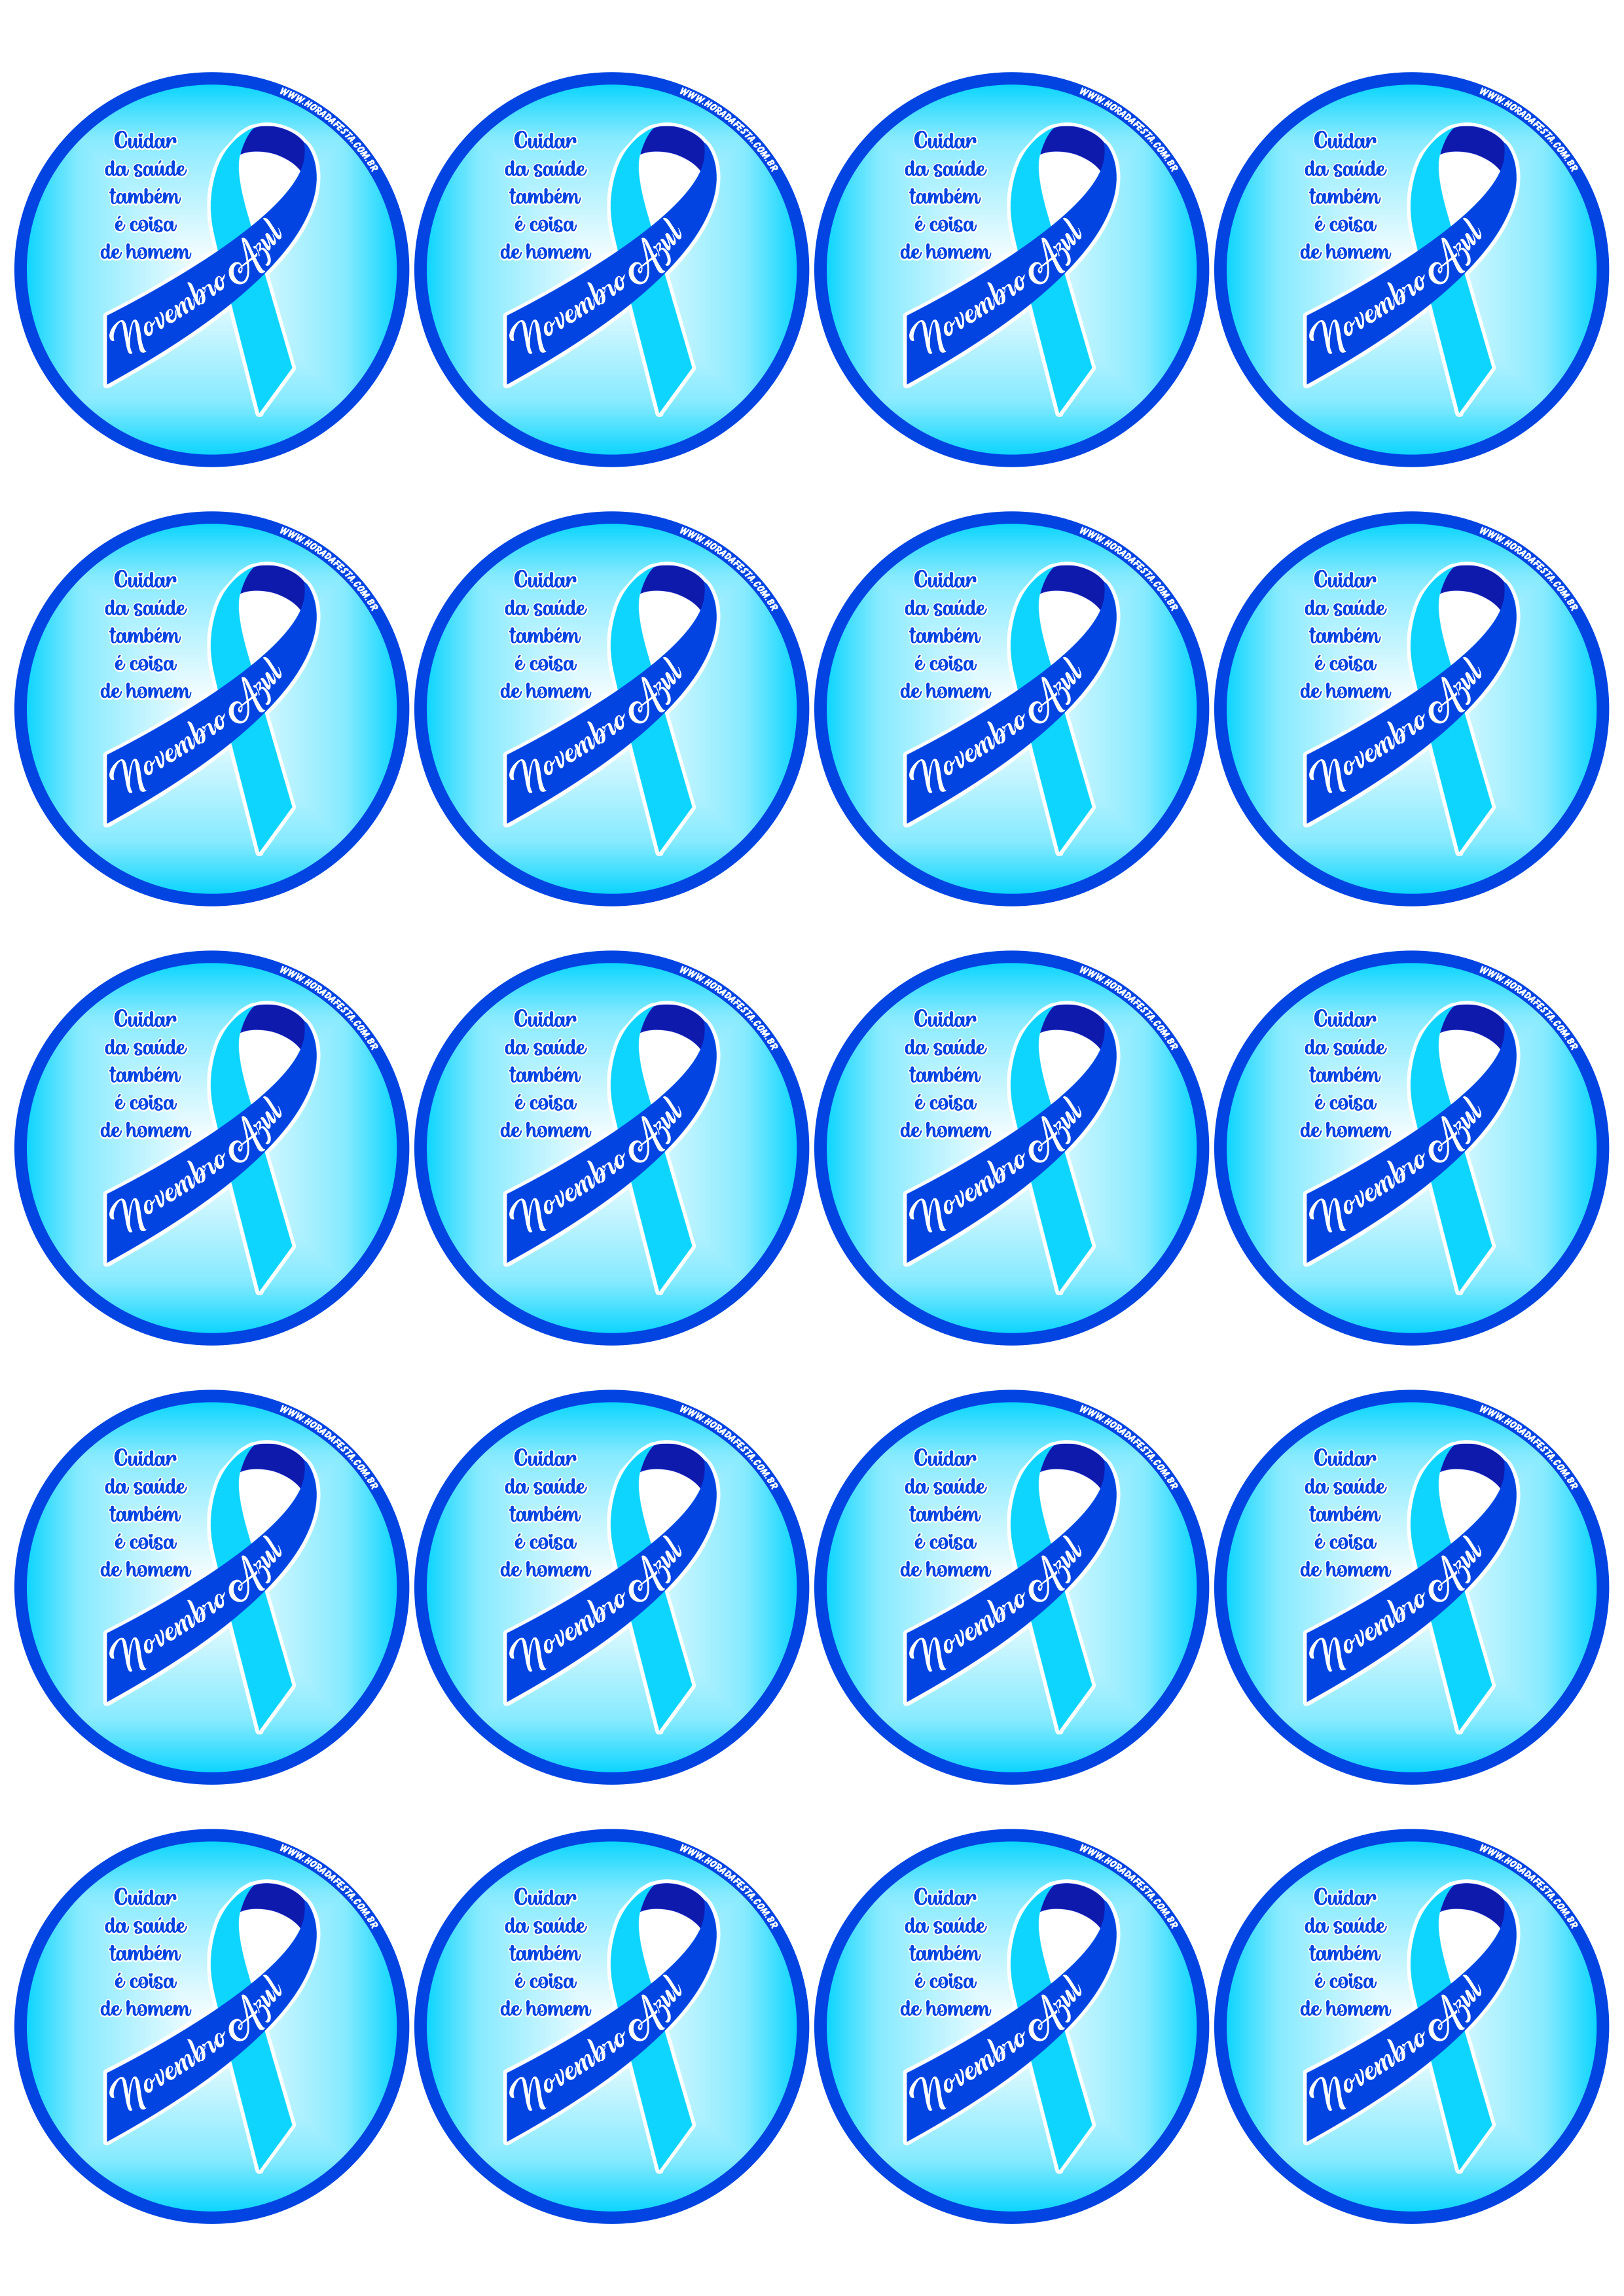 Novembro Azul mês de prevenção ao câncer de próstata cuidar da saúde também é coisa de homem adesivo tag sticker redondo 20 imagens png